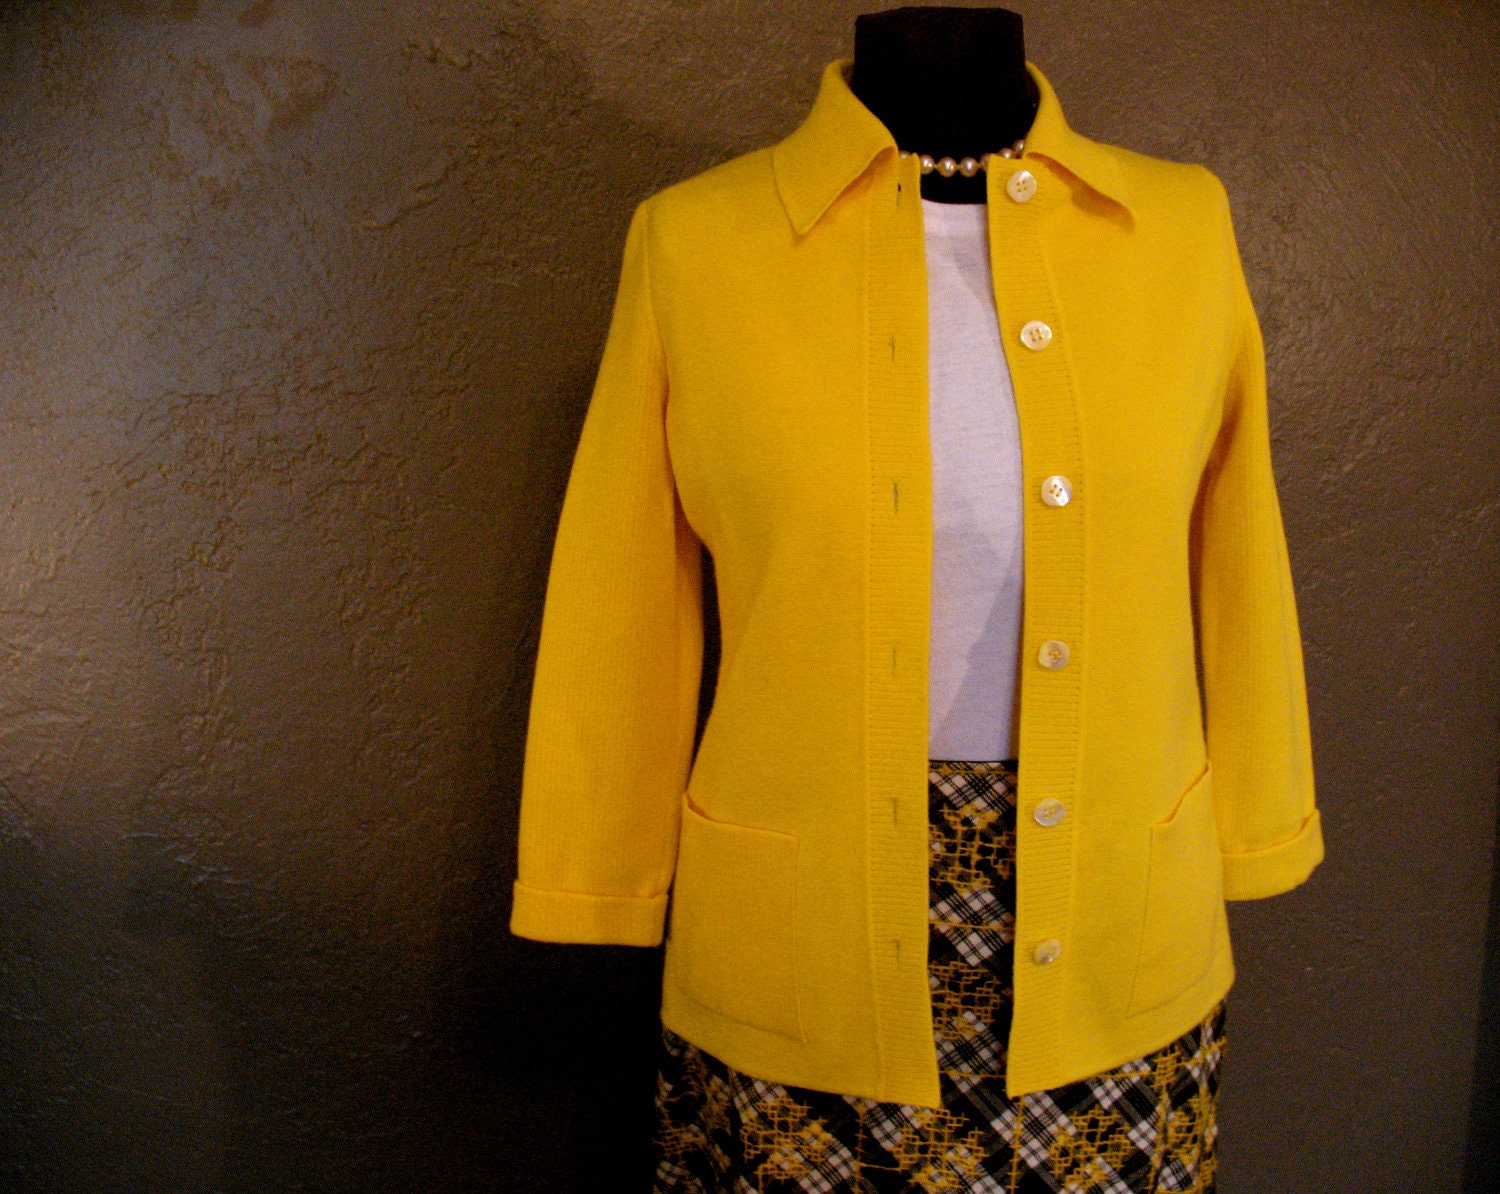 treatysucn - bright yellow cardigan sweater